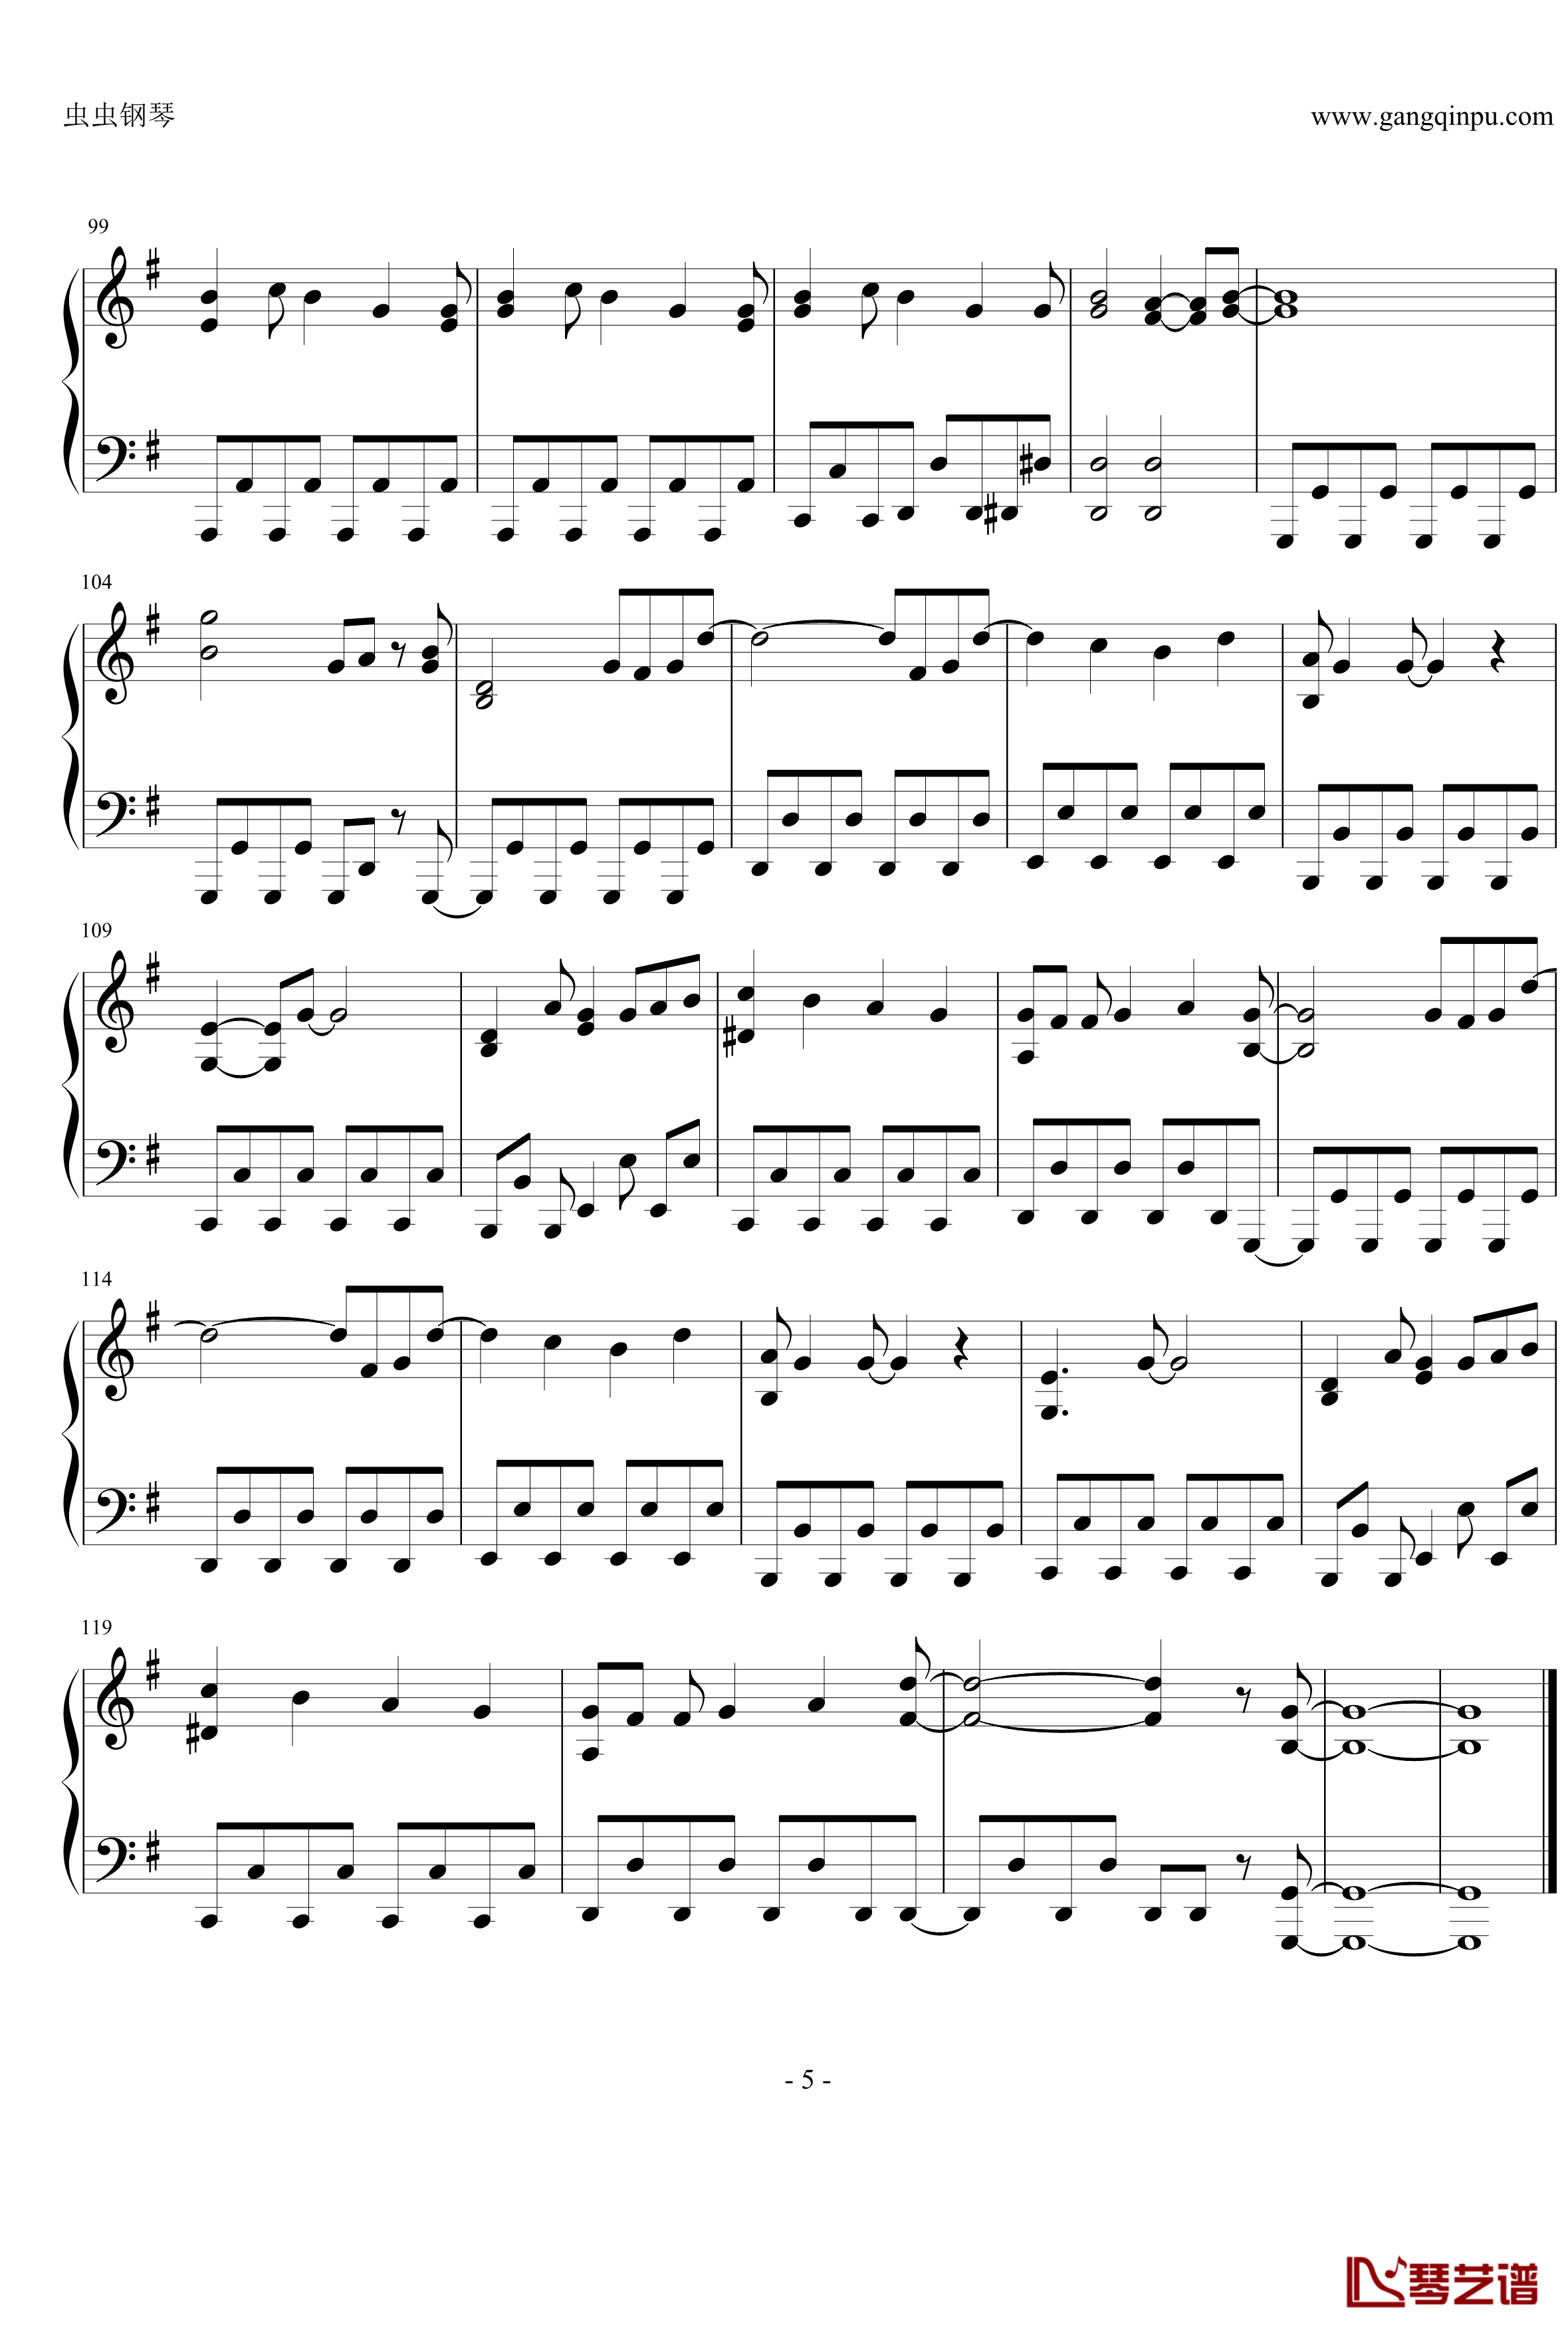 オーマイガー钢琴谱-修订完善版-NMB485